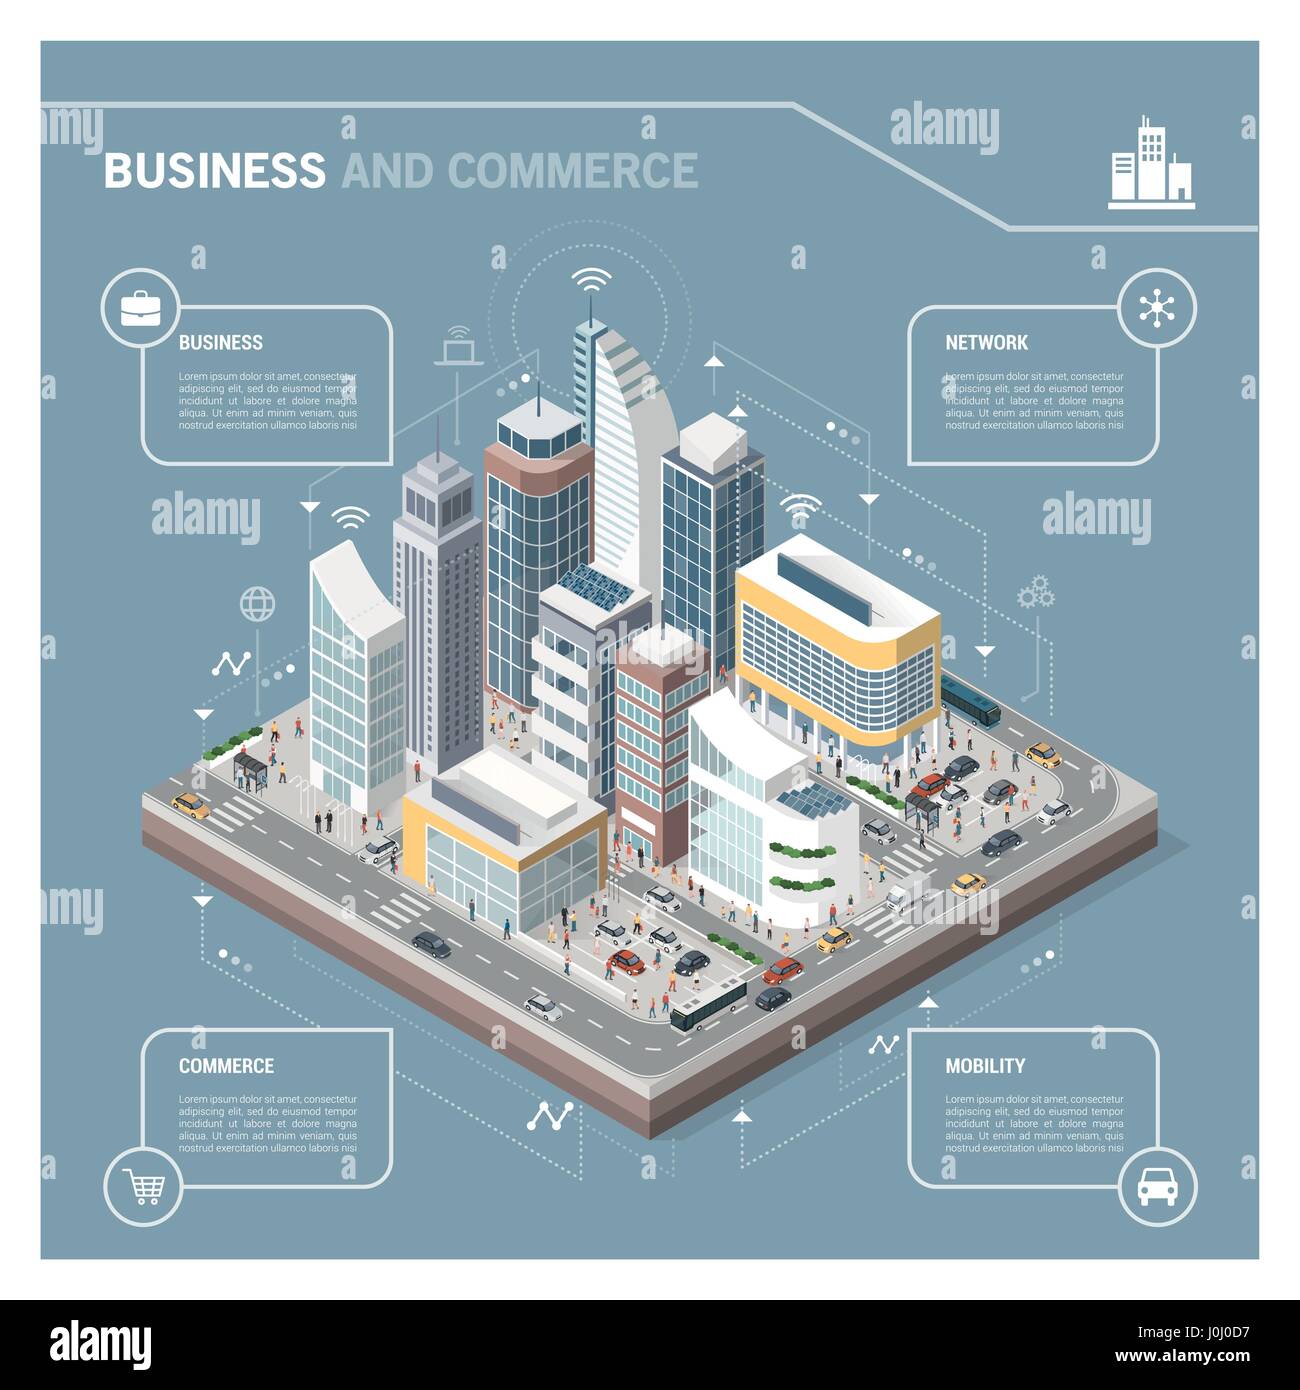 Isometrische Vektor Stadt mit Wolkenkratzern, Menschen, Straßen und Fahrzeuge, kommerziellen und geschäftlichen Bereich Infografik mit Symbolen Stock Vektor